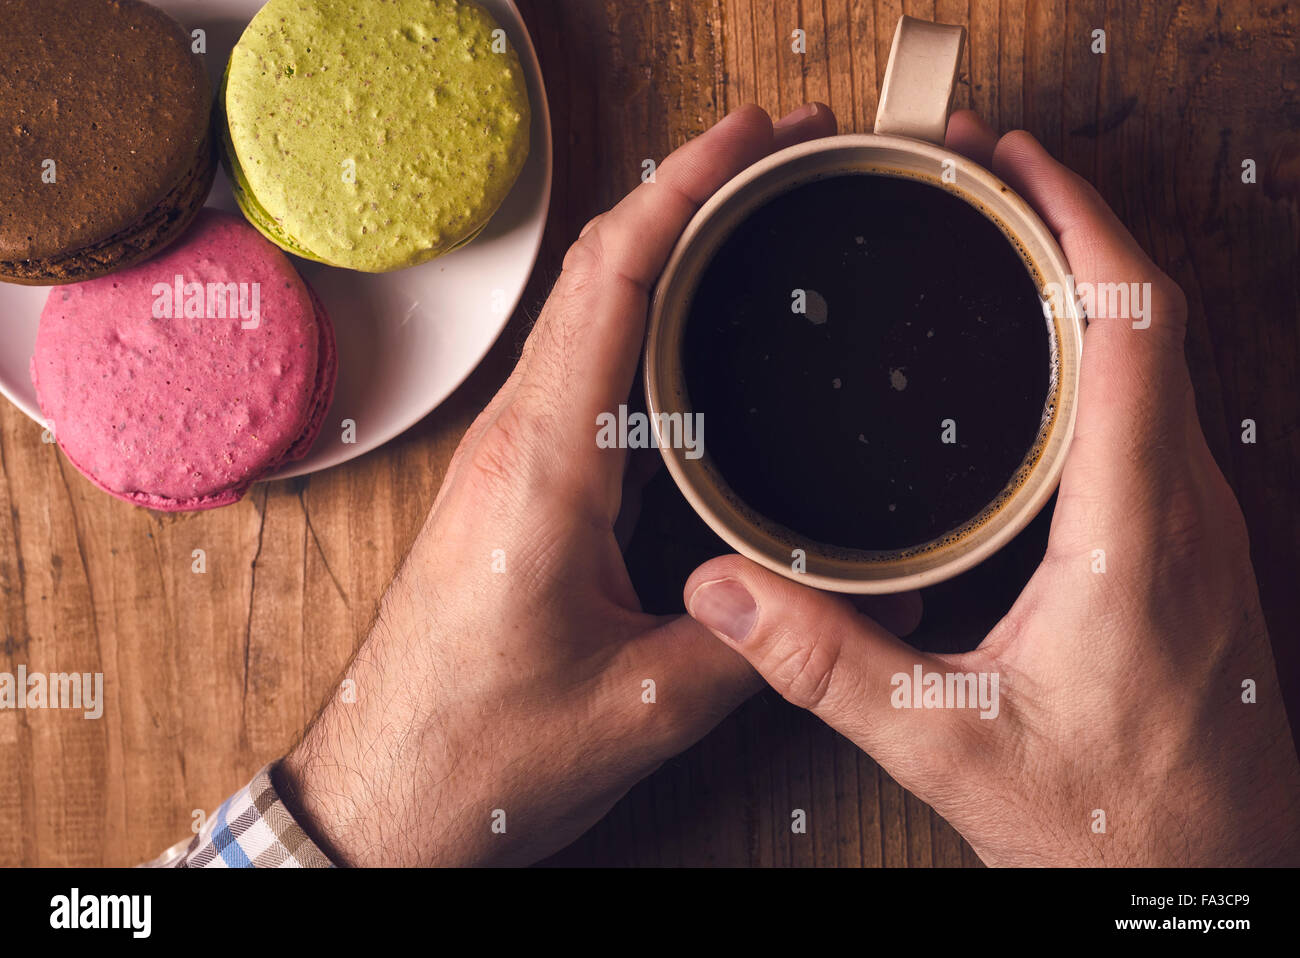 Tasse de café chaud et biscuits macaron sur la table le matin, male hands holding cup avec boisson chaude, vue d'en haut, aux couleurs rétro Banque D'Images